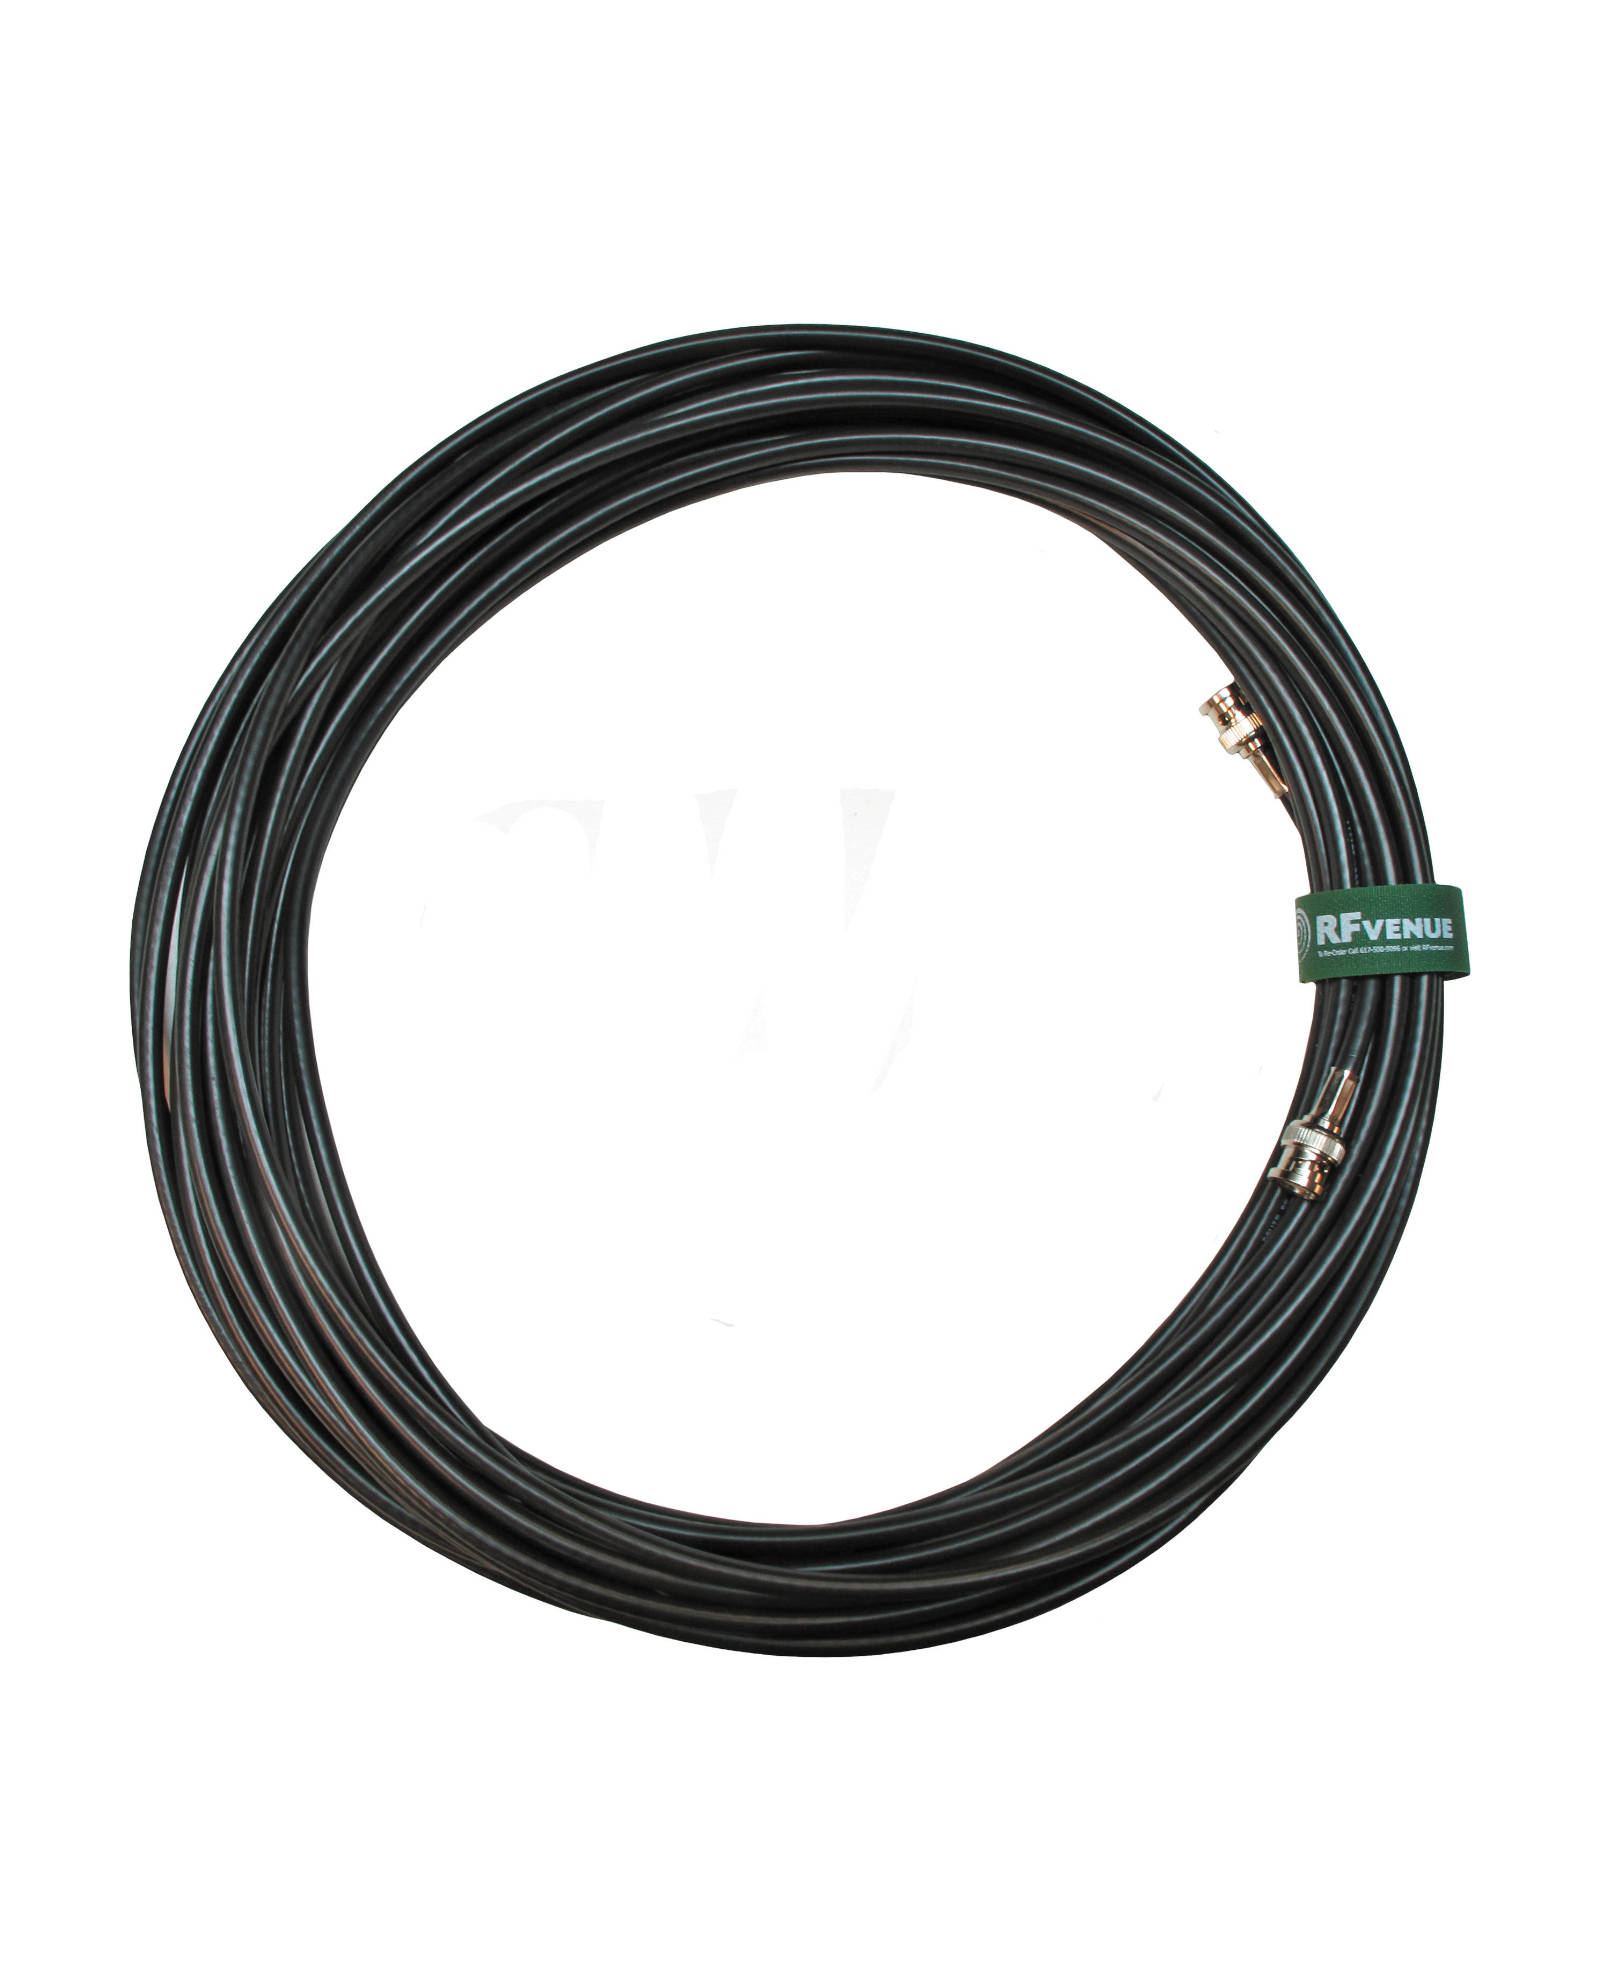 Rf Venue Coaxial Cables